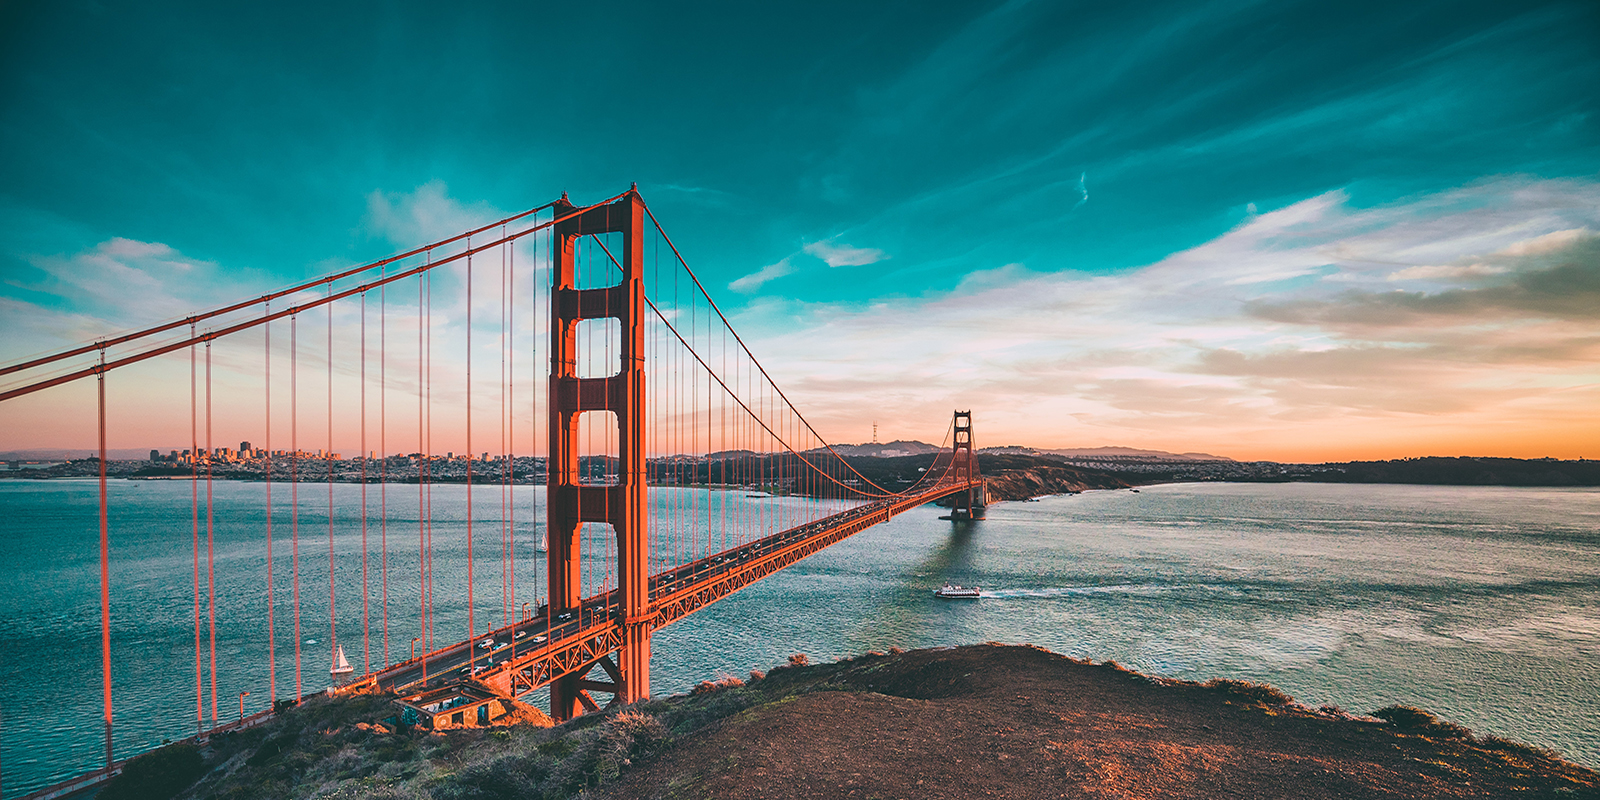 Golden Gate bridge in San Franciso taken at sunset